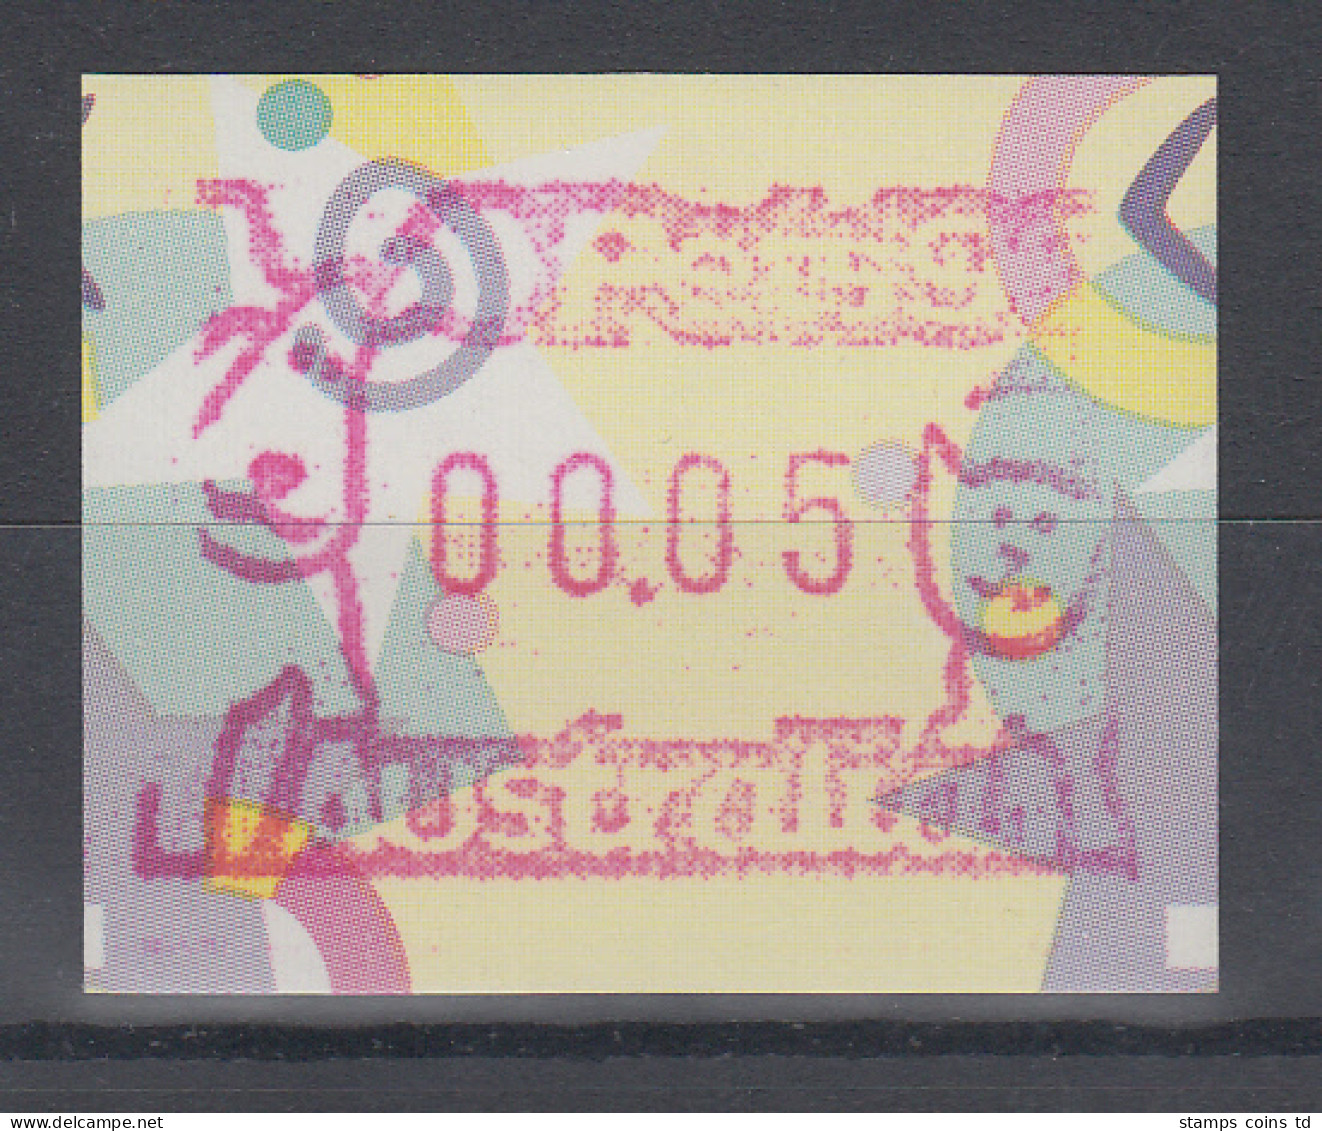 Australien Frama-ATM "Festive Frama"  Sonderausgabe Pets 96  ** - Viñetas De Franqueo [ATM]